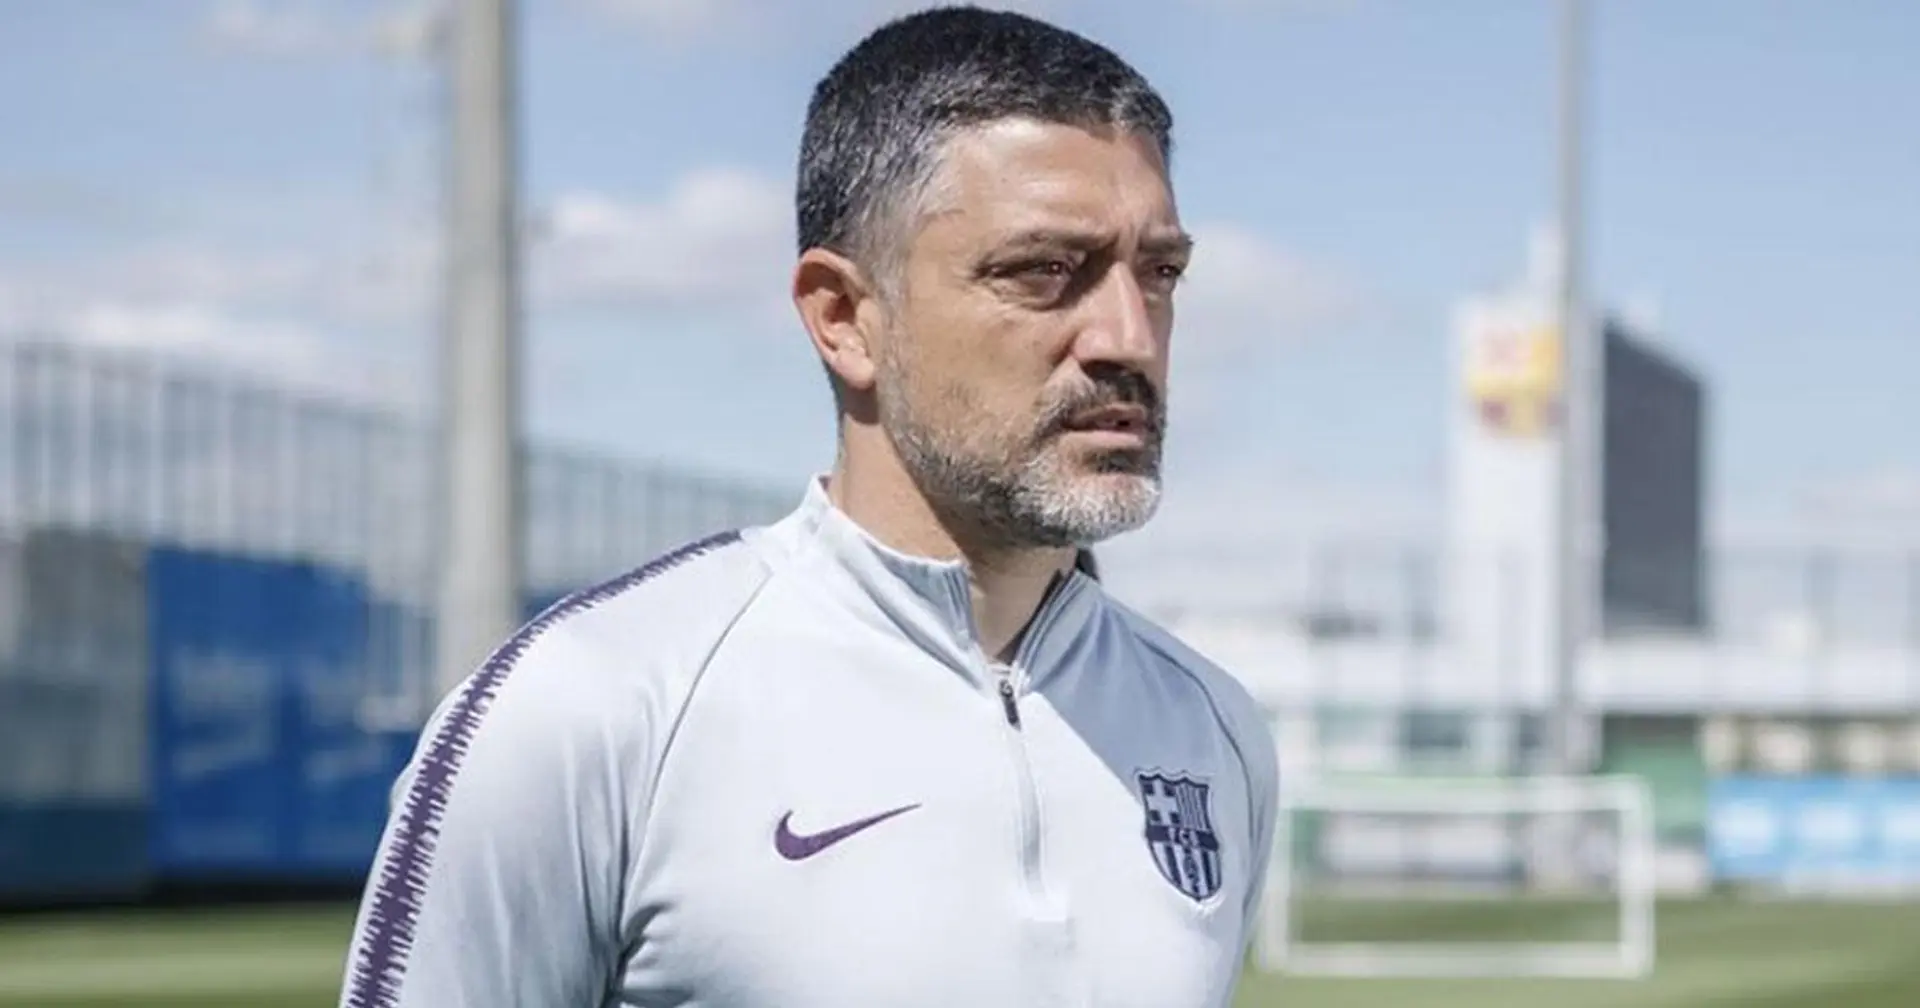 El Barça despide a García Pimienta, entrenador del filial - múltiples fuentes